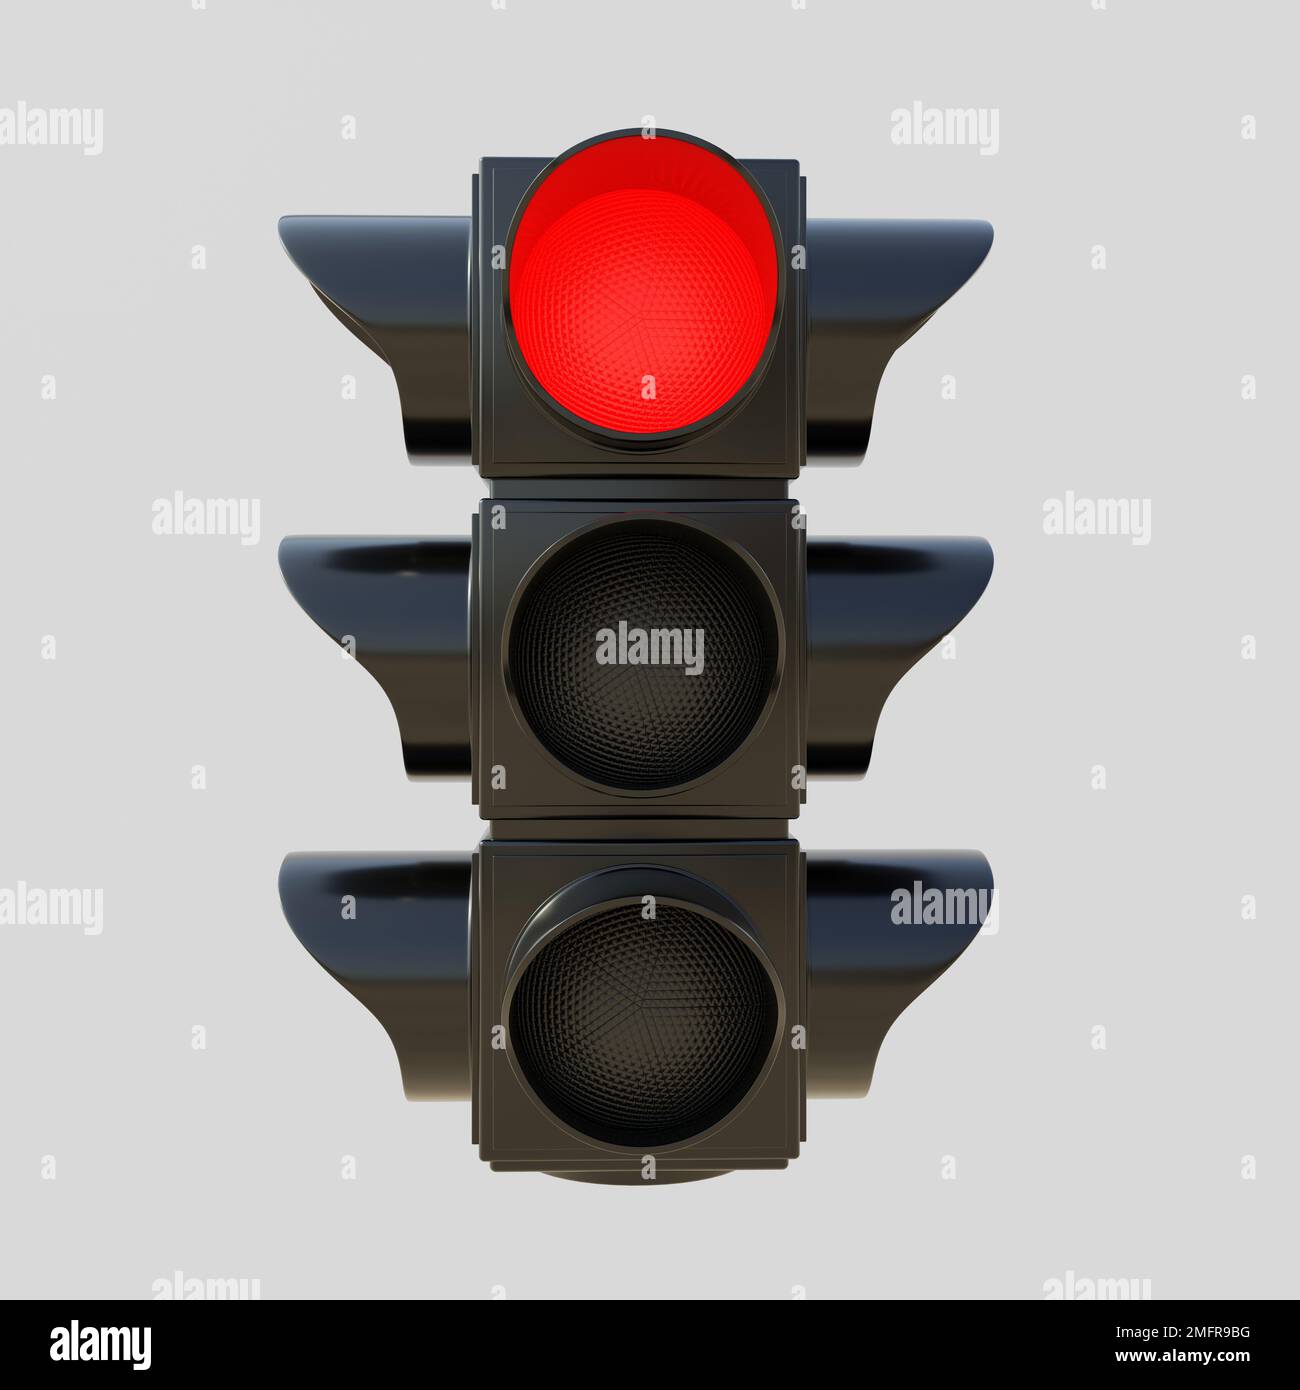 Rote Ampel isolierter Ausschnitt auf grauem Hintergrund. Semaphore-Ampel mit rotem Bremssignal. Straßenaufmerksamkeitskonzept. 3D-Rendern Stockfoto